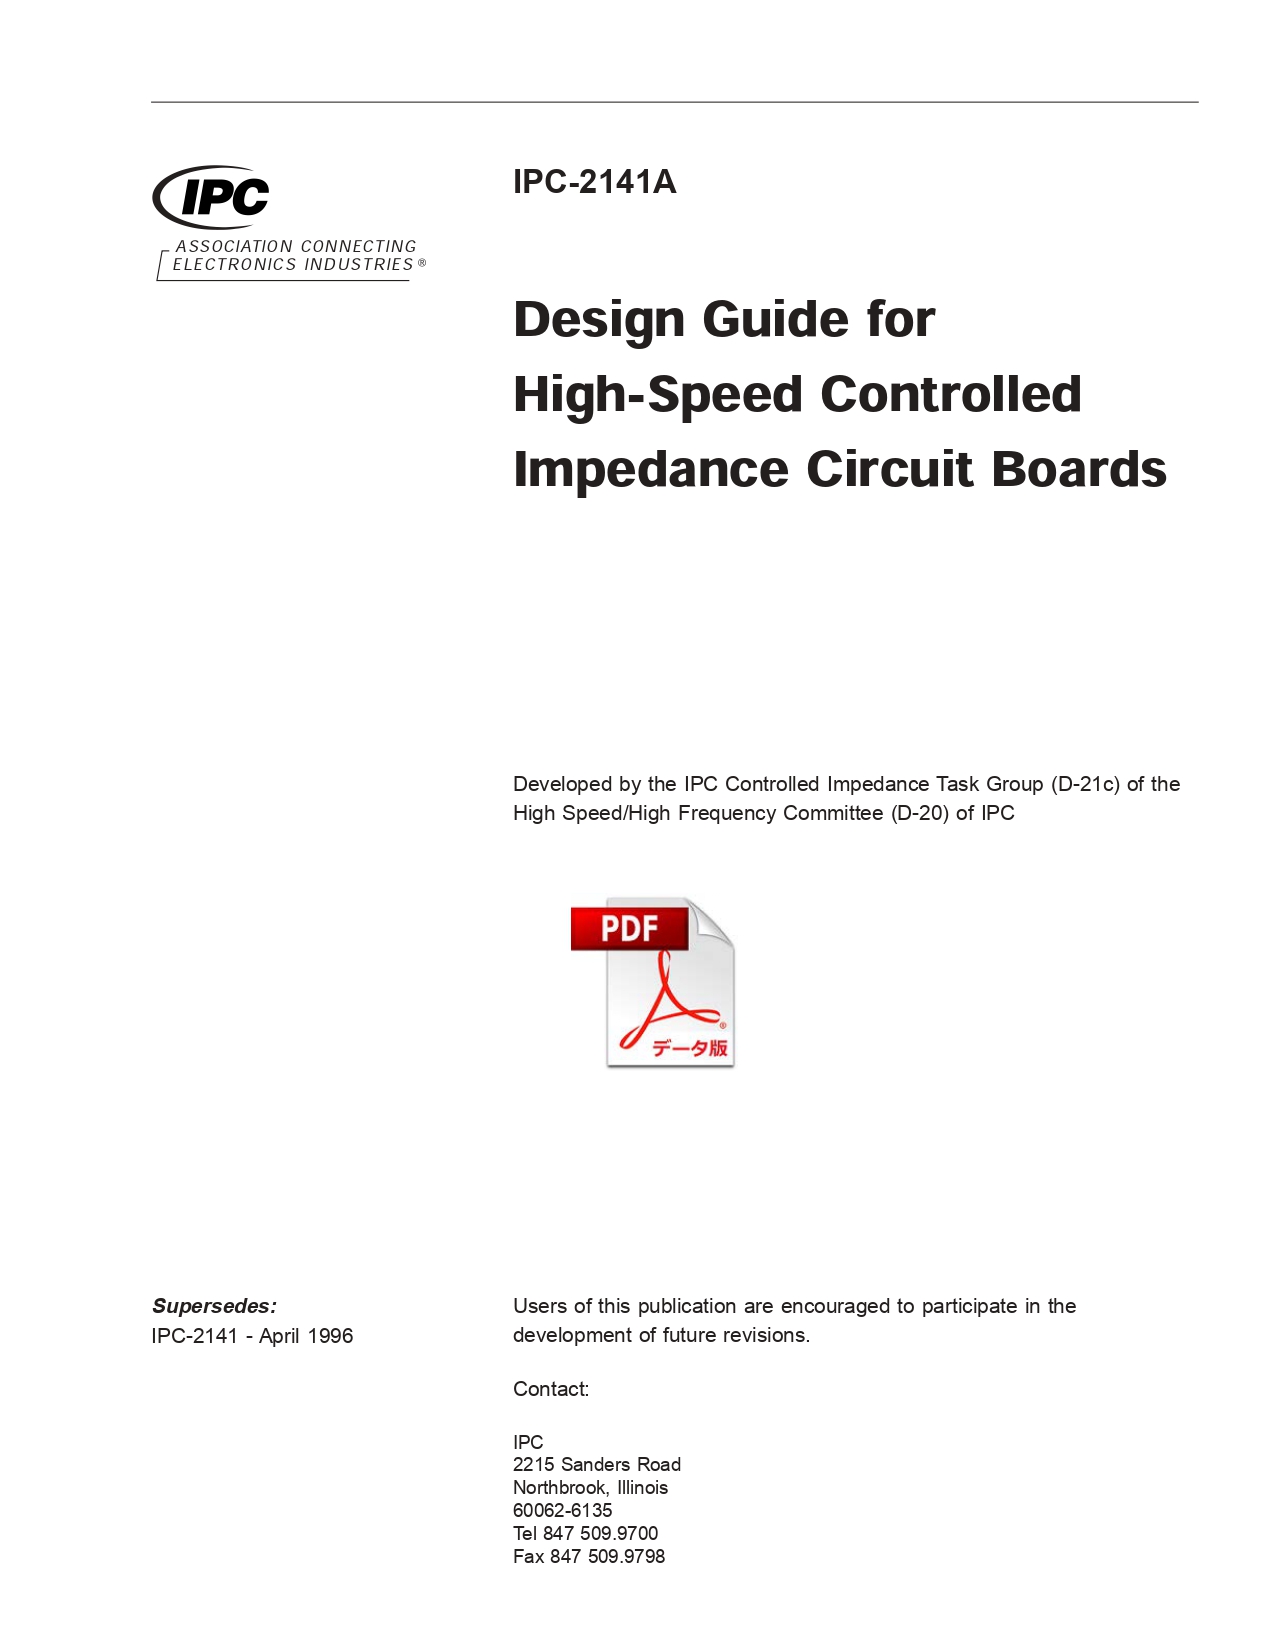 ［英語版］IPC-2141A: Design Guide for High-Speed Controlled Impedance Circuit Boards